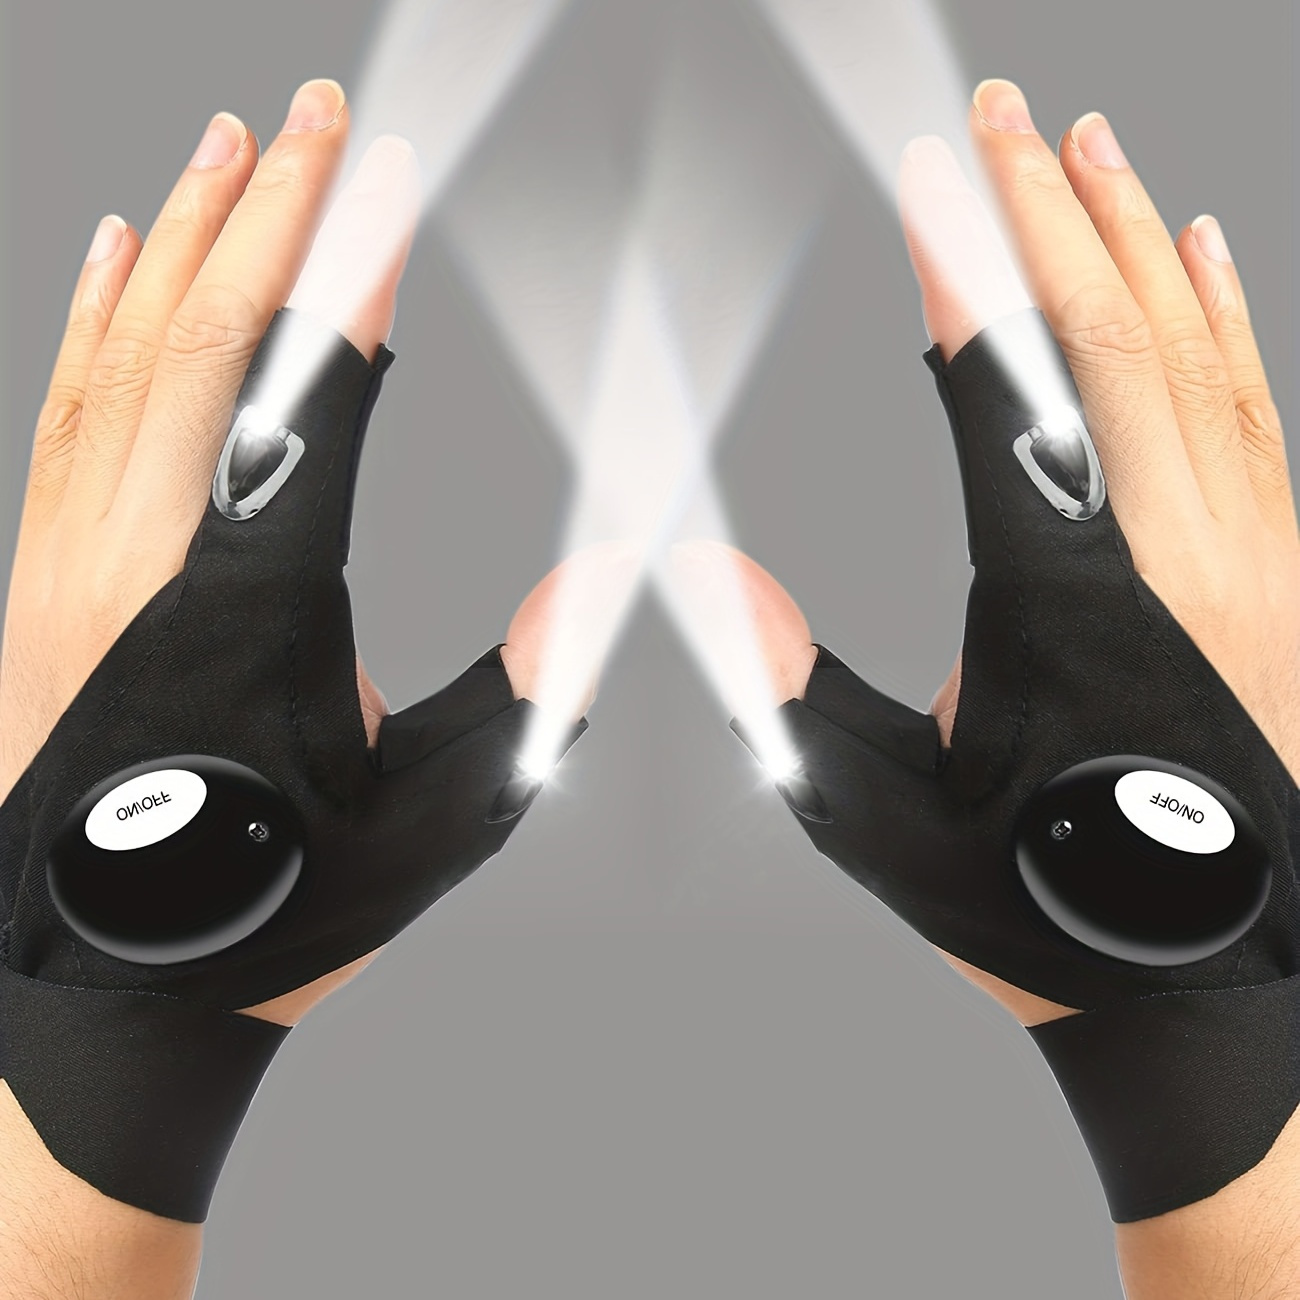 LED Taschenlampe Handschuhe, USB Wiederaufladbare Fingerlose Hands-Free  Taschenlampe Handschuhe, 1 Paar Einzigartige Handschuhe Gadgets zum Angeln